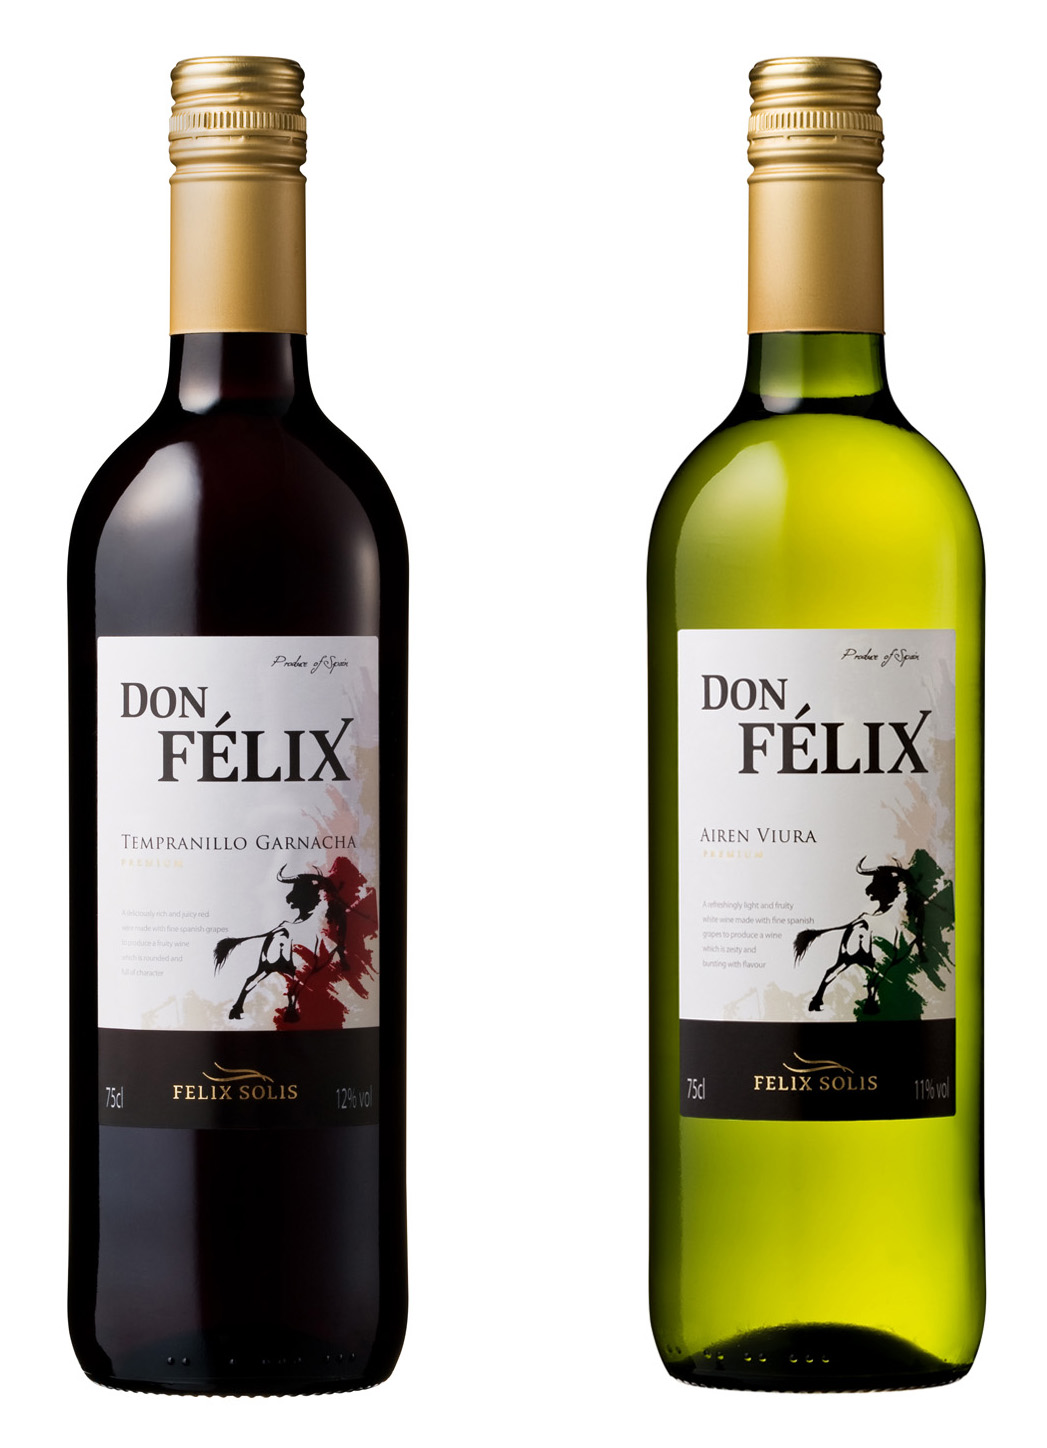 お値頃価格のスペイン産ワイン ドン フェリックス 新発売 ニュースリリース12年 オエノングループ